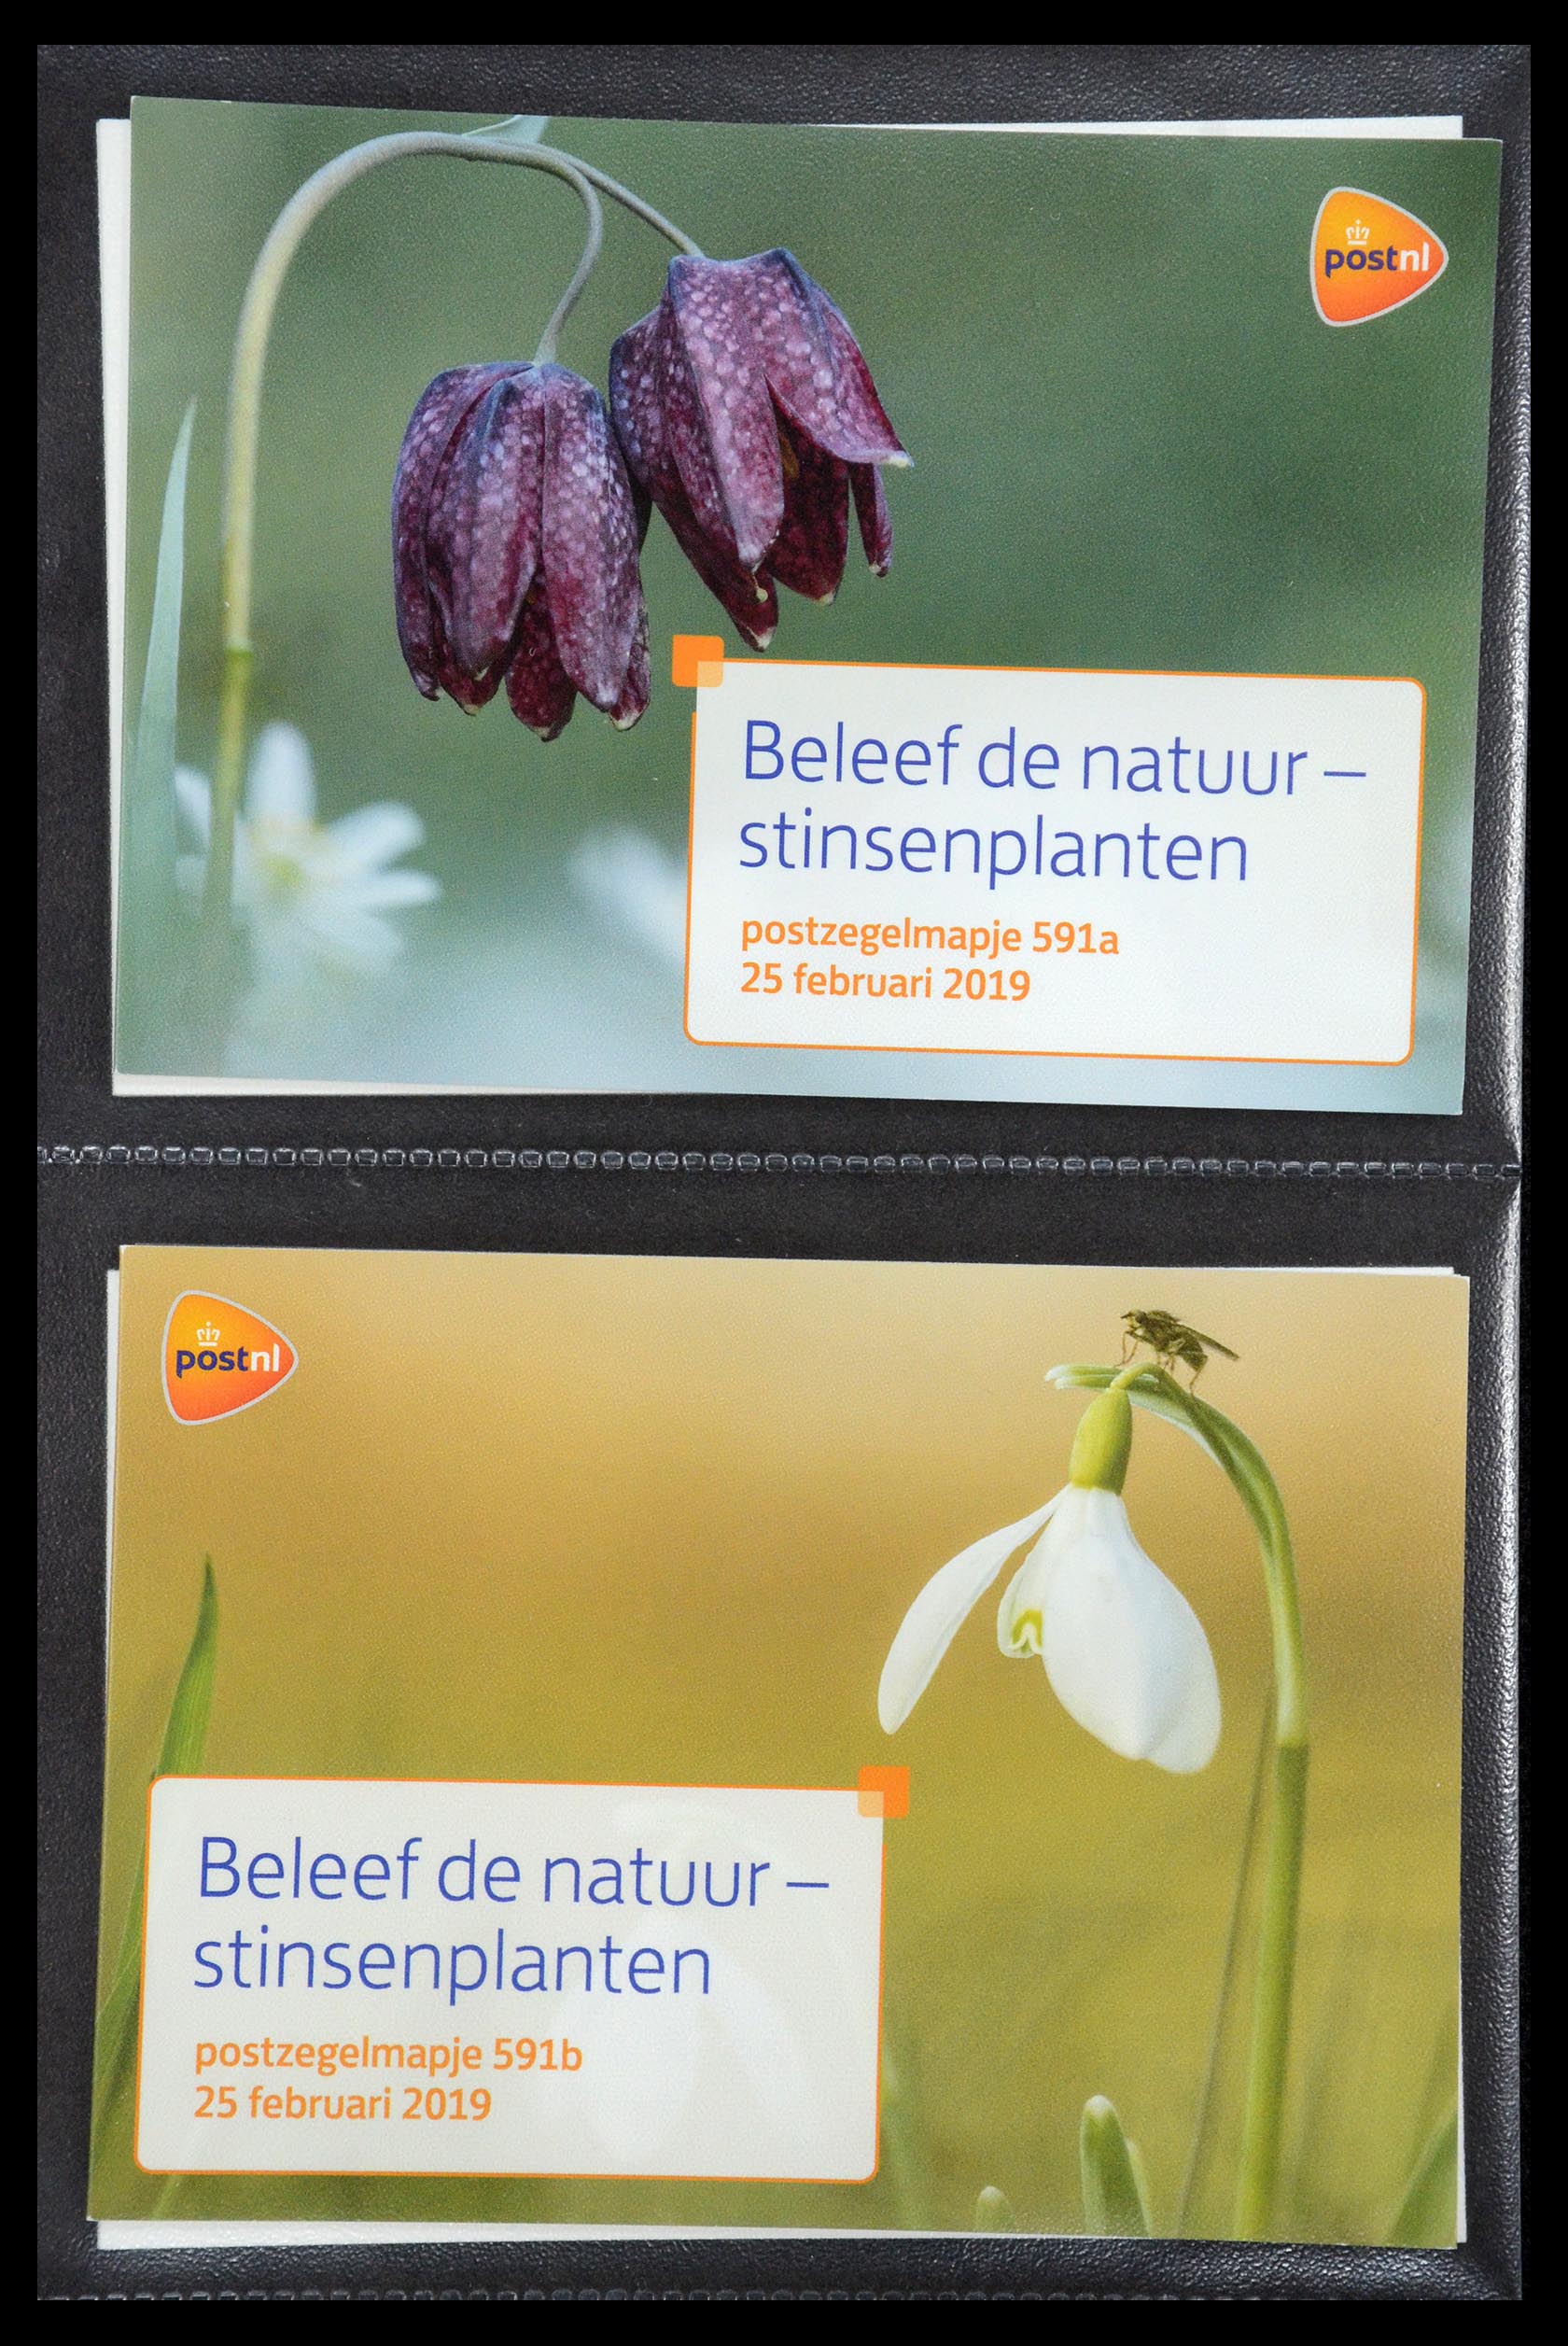 35187 357 - Stamp Collection 35187 Netherlands PTT presentation packs 1982-2019!